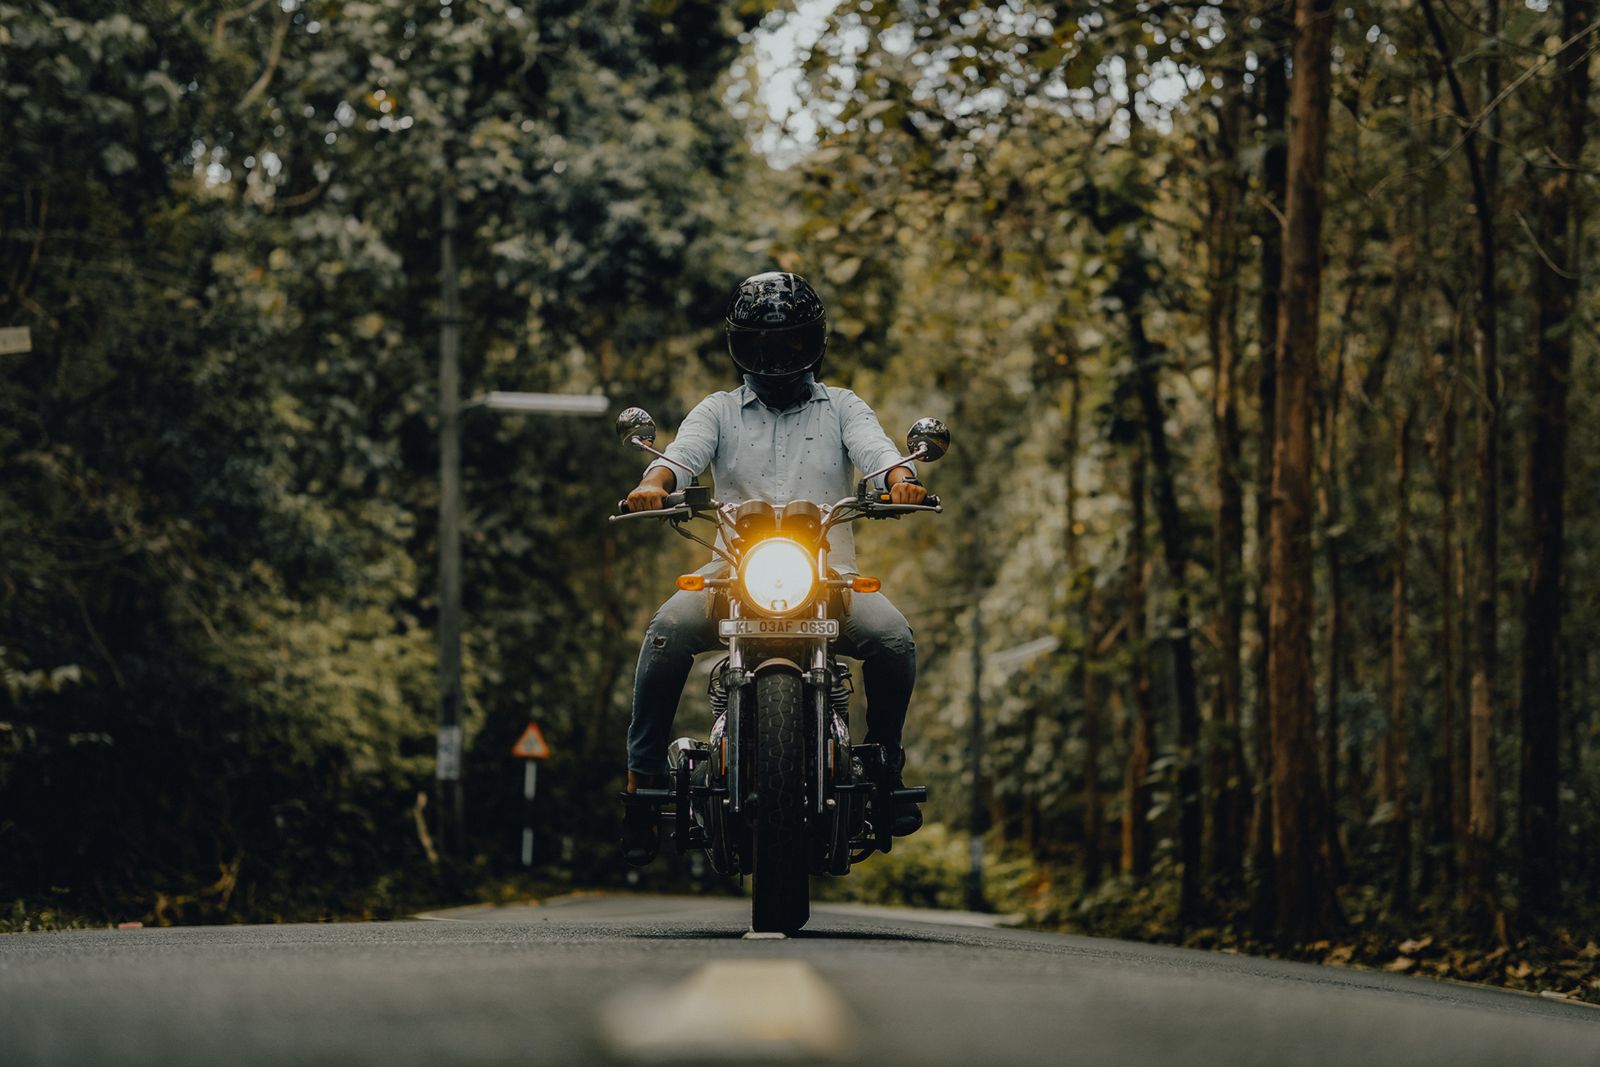 Beneficios del alquiler de motos si viajas solo